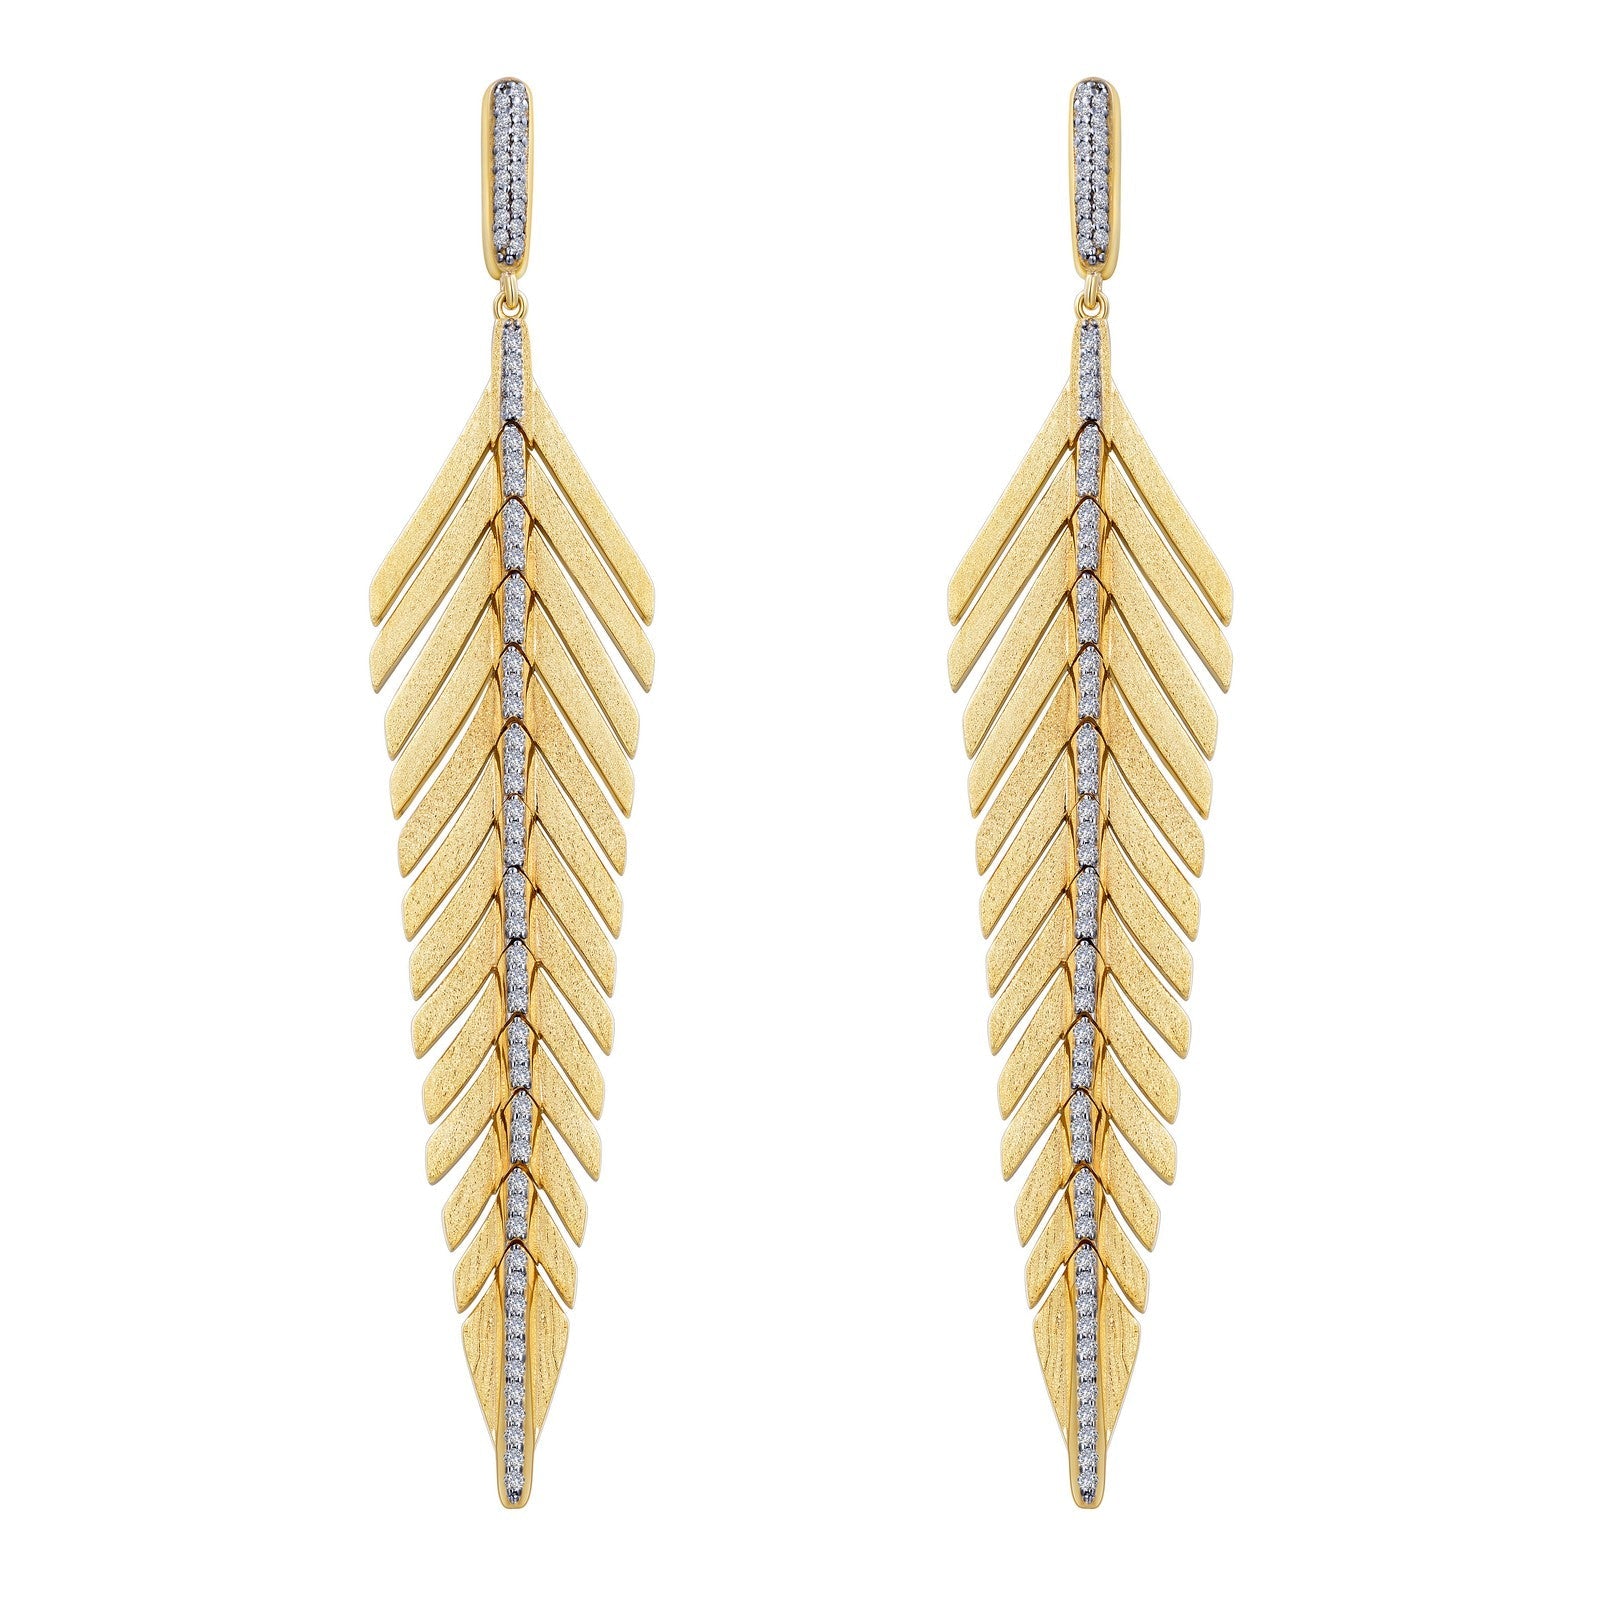 Elegant Feather Drop Earrings-E0459CLT